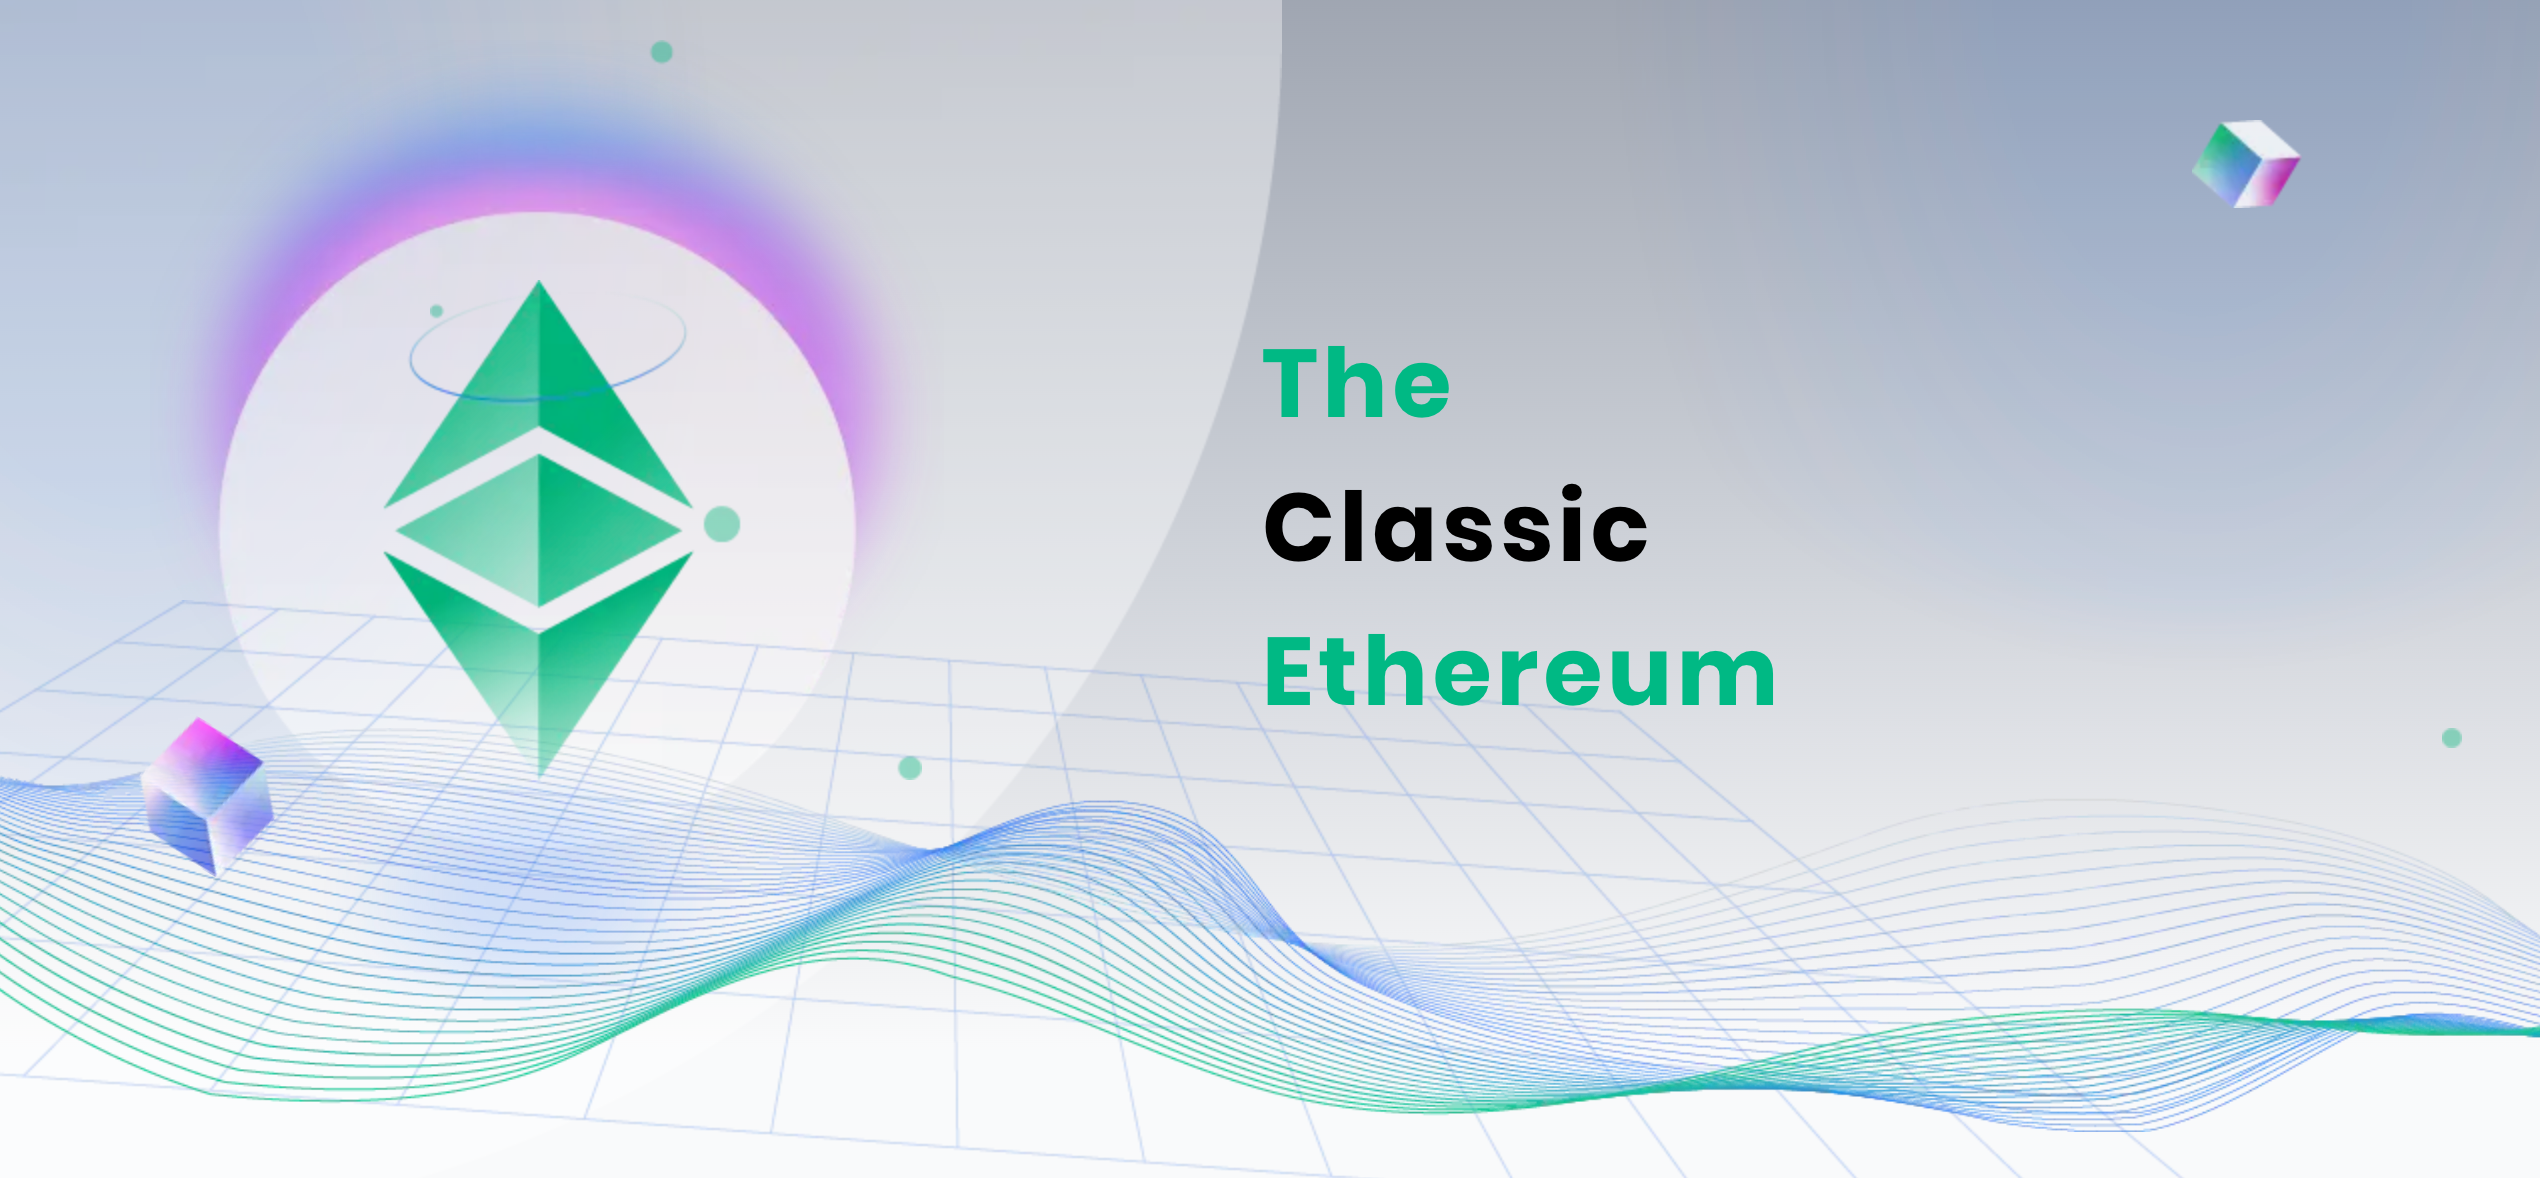 ETC is the Classic Ethereum.